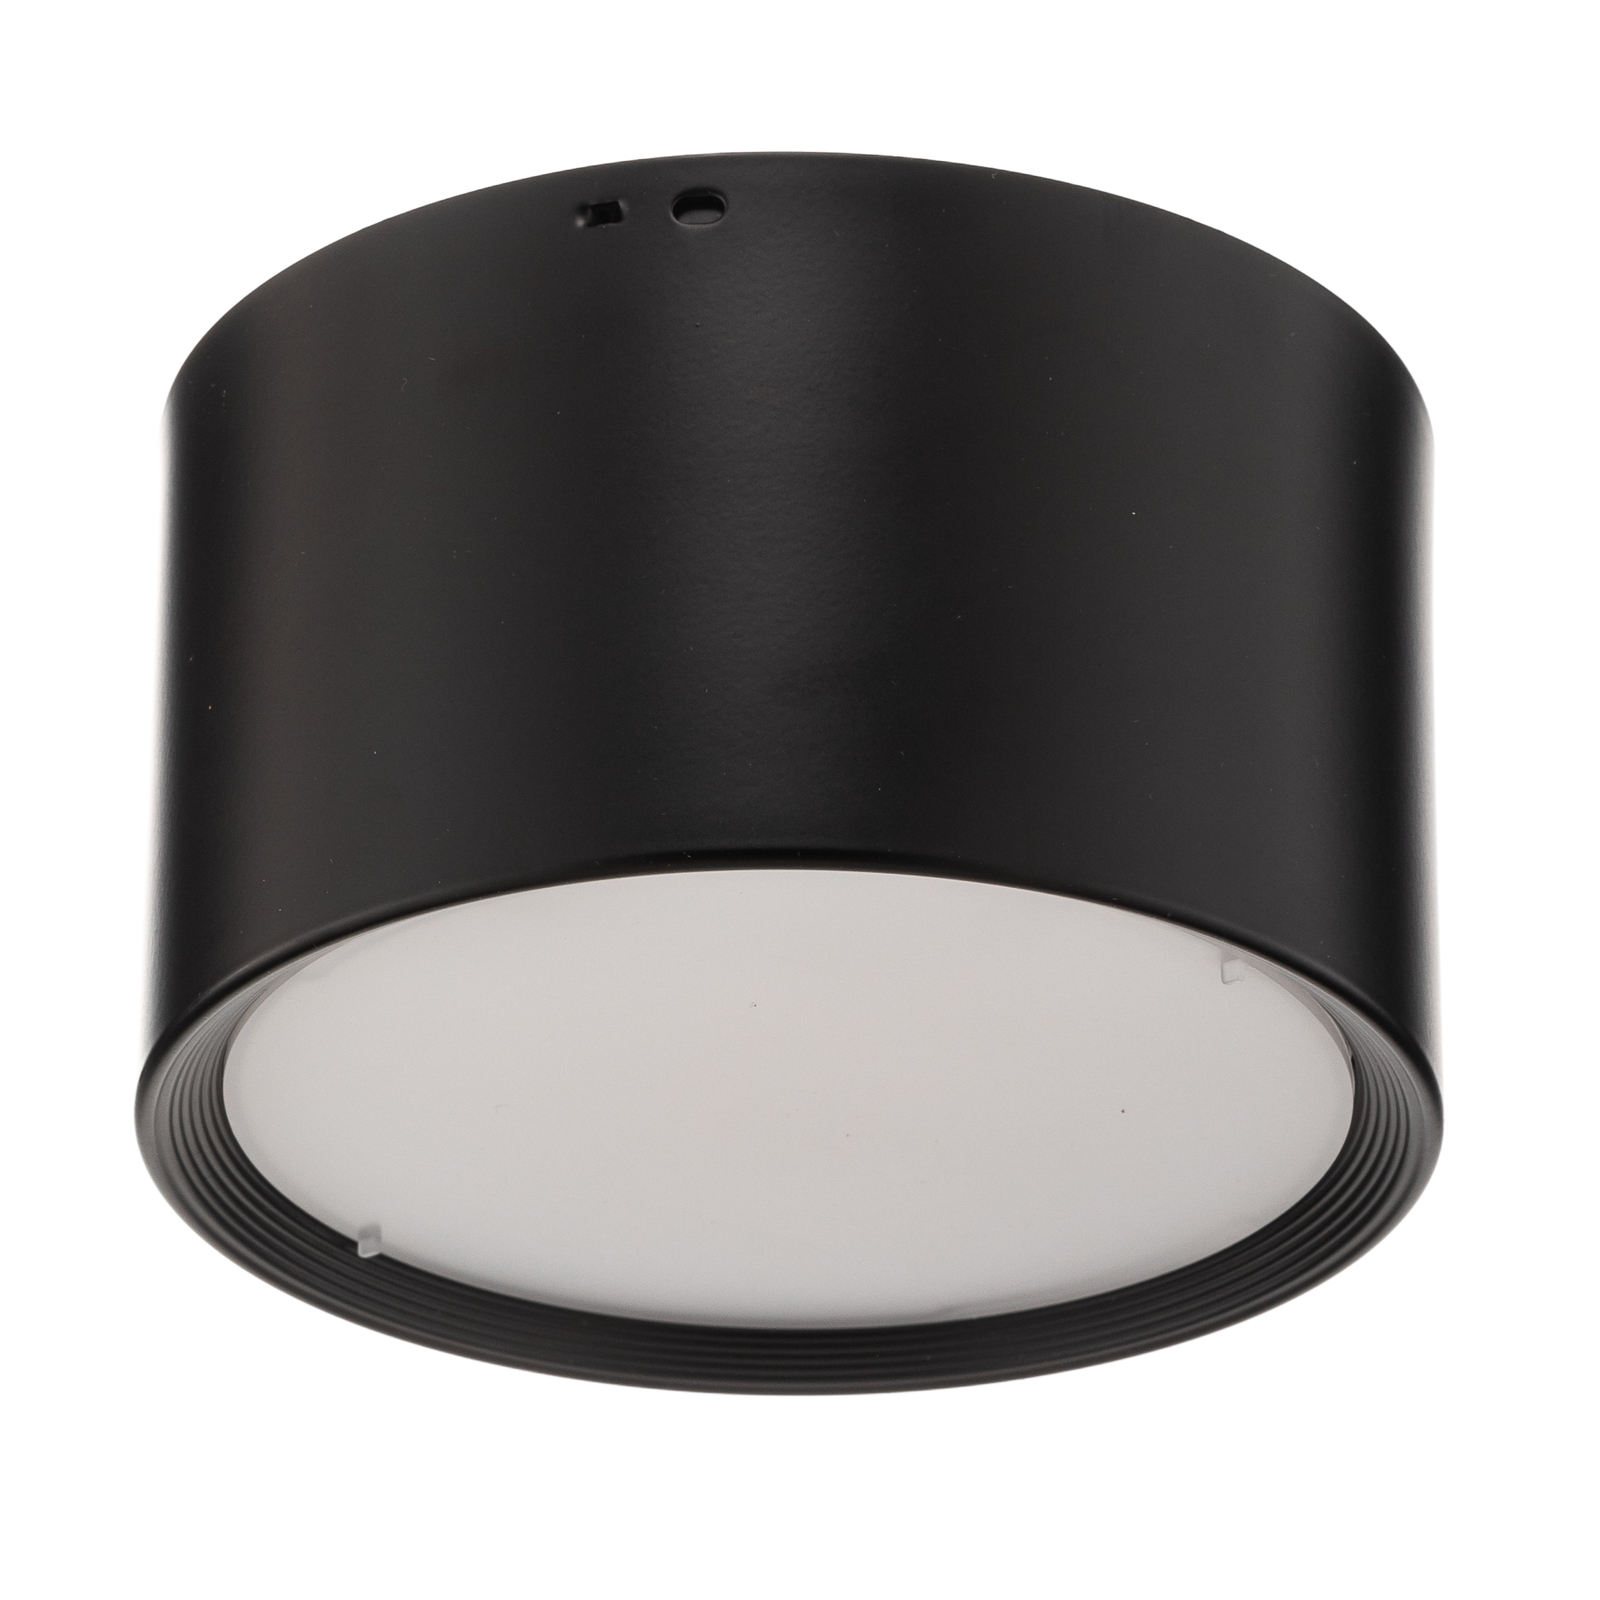 Faretto Ita LED nero con diffusore, Ø 15 cm